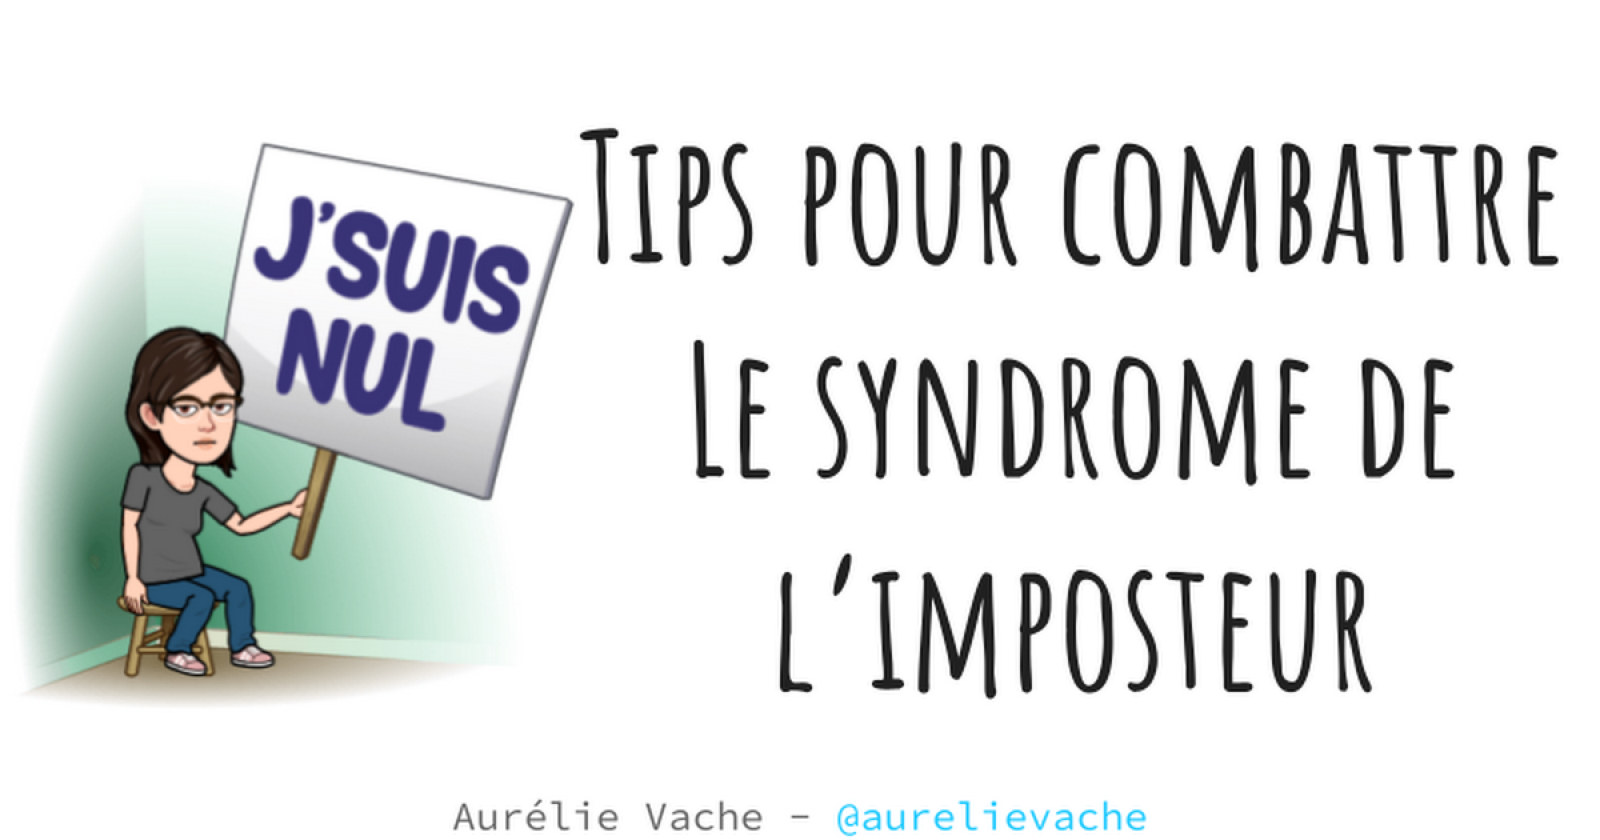 Tips pour combattre le syndrome de l’imposteur by Aurélie Vache